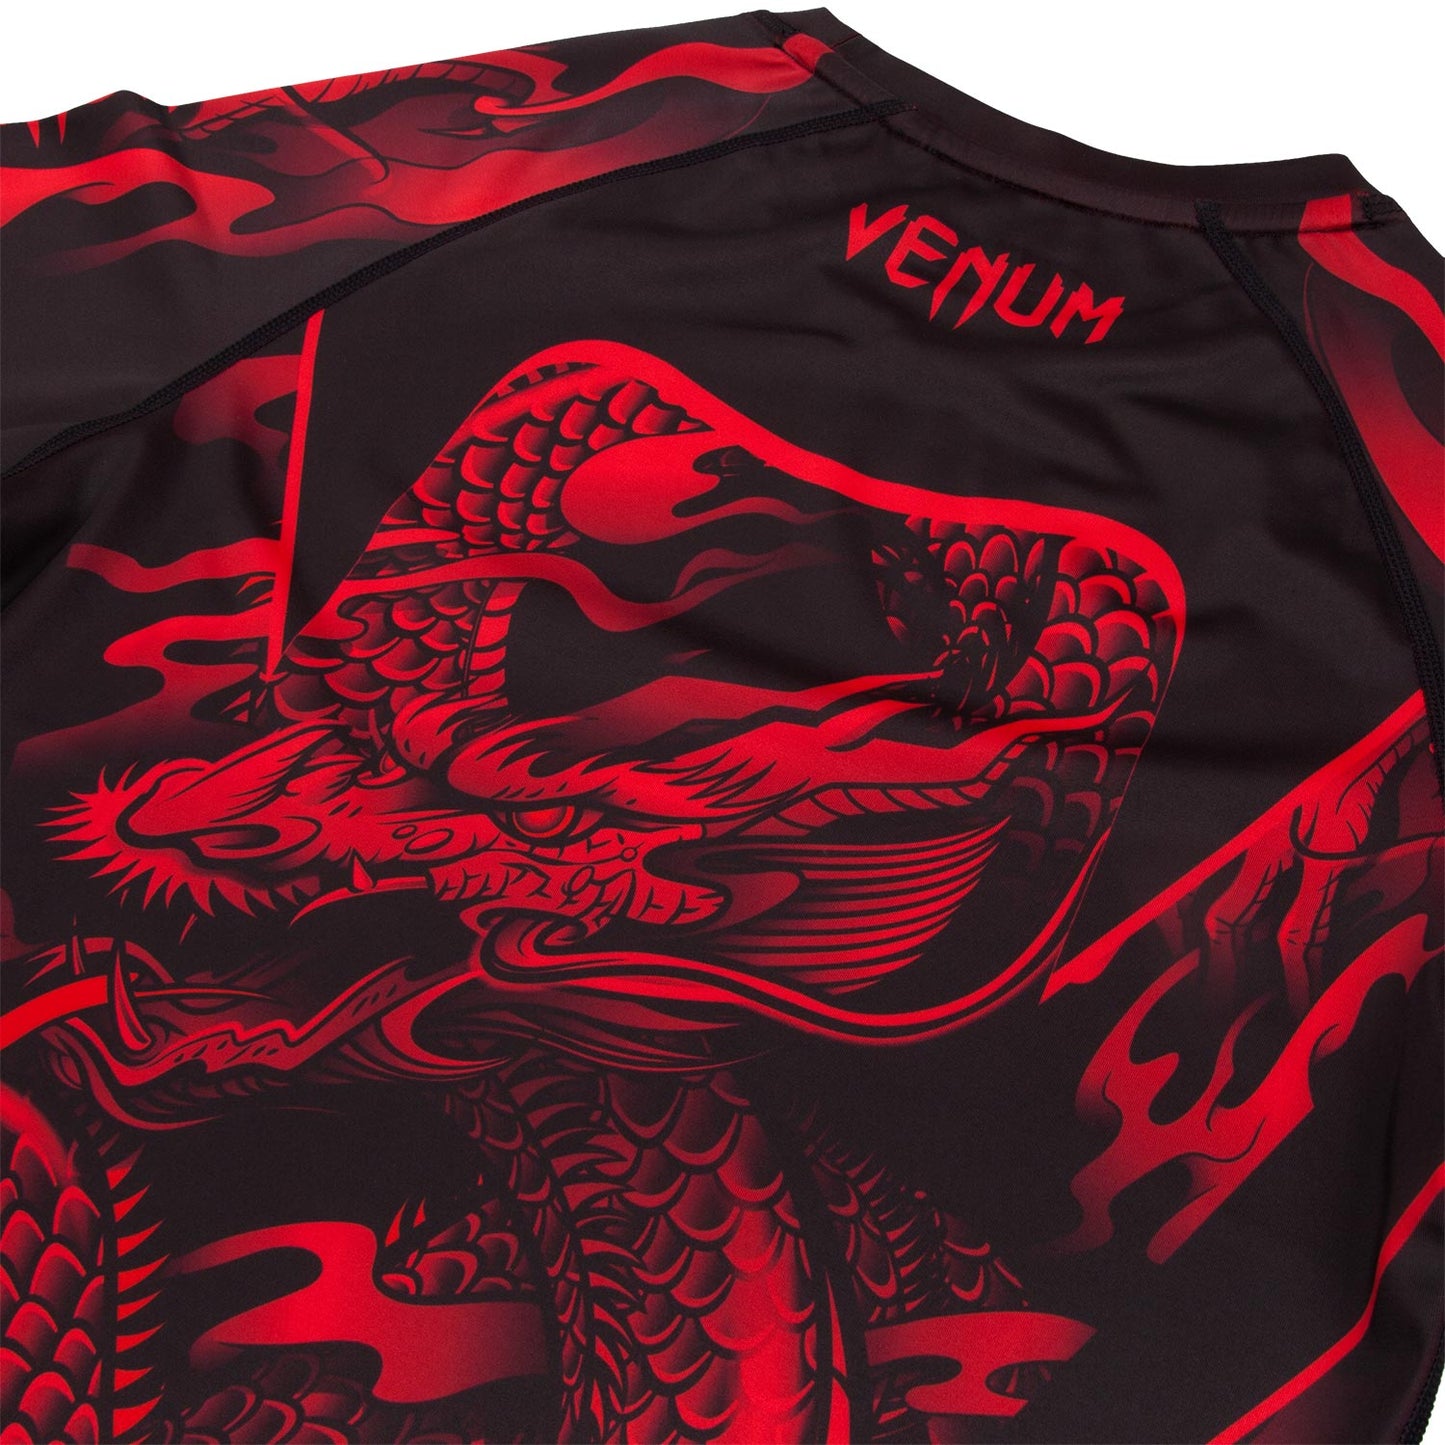 Venum Dragon's Flight Rashguard - Long Sleeves - Black/Red